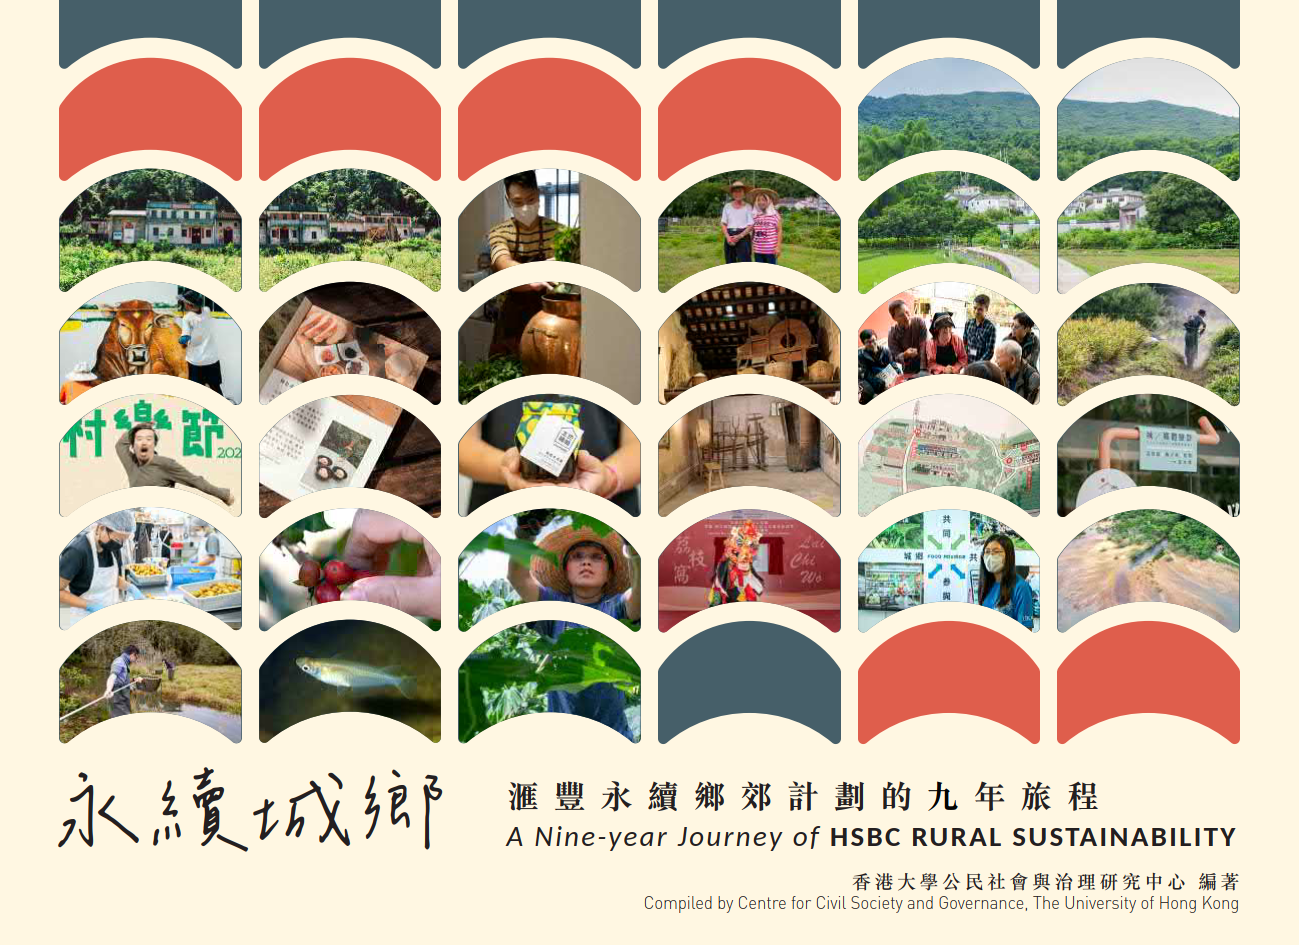 永續城鄉 - 滙豐永續鄉郊計劃的九年旅程